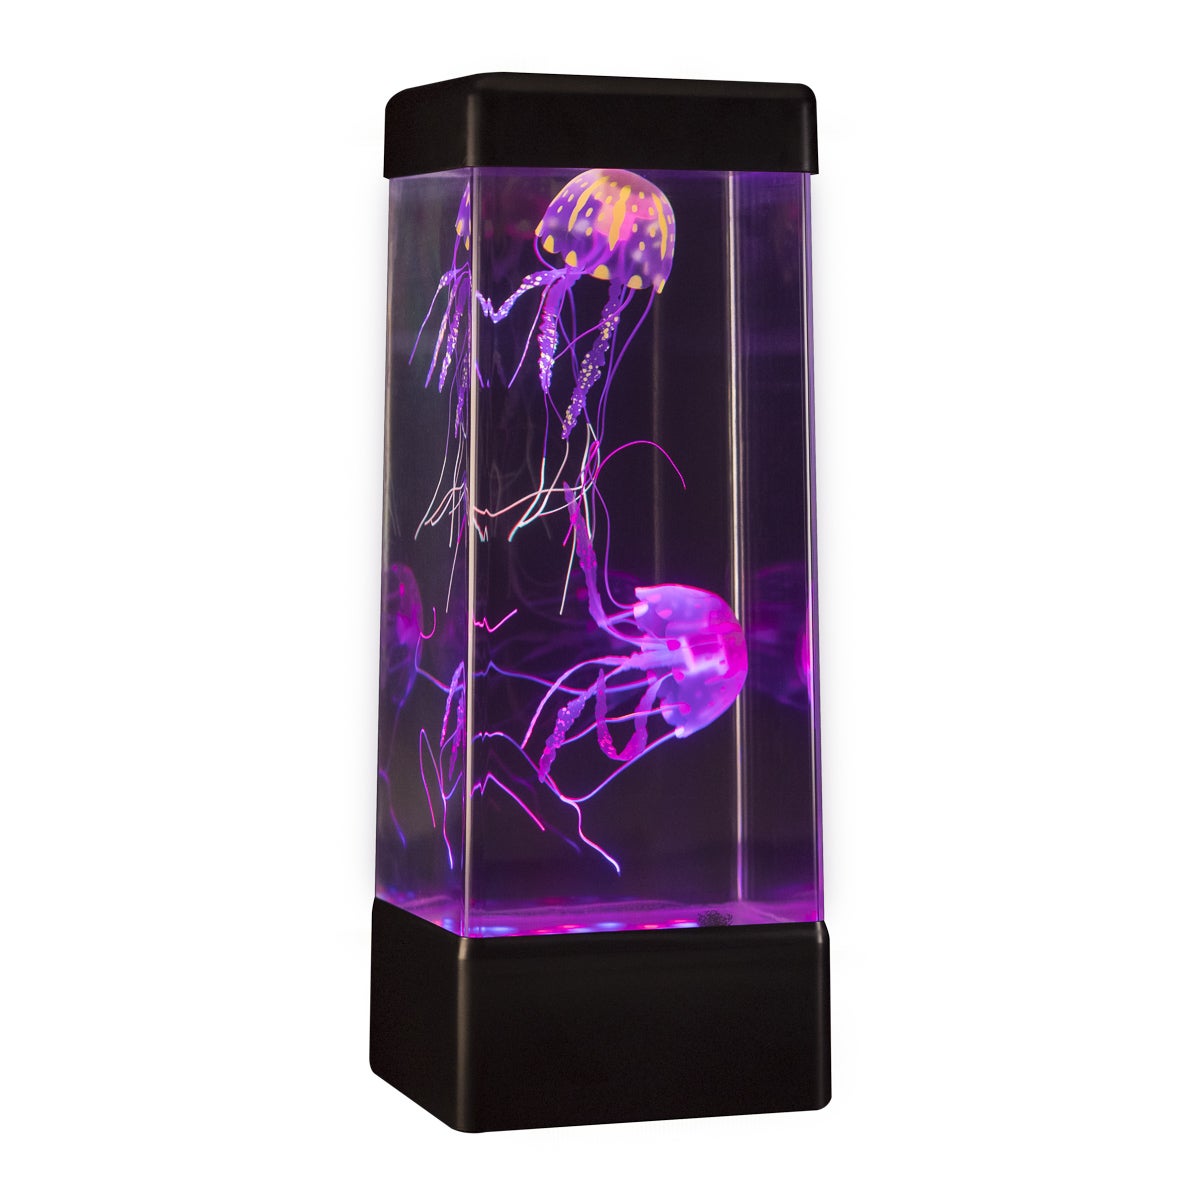 The JINX Luminous Jellyfish Mood Lamp